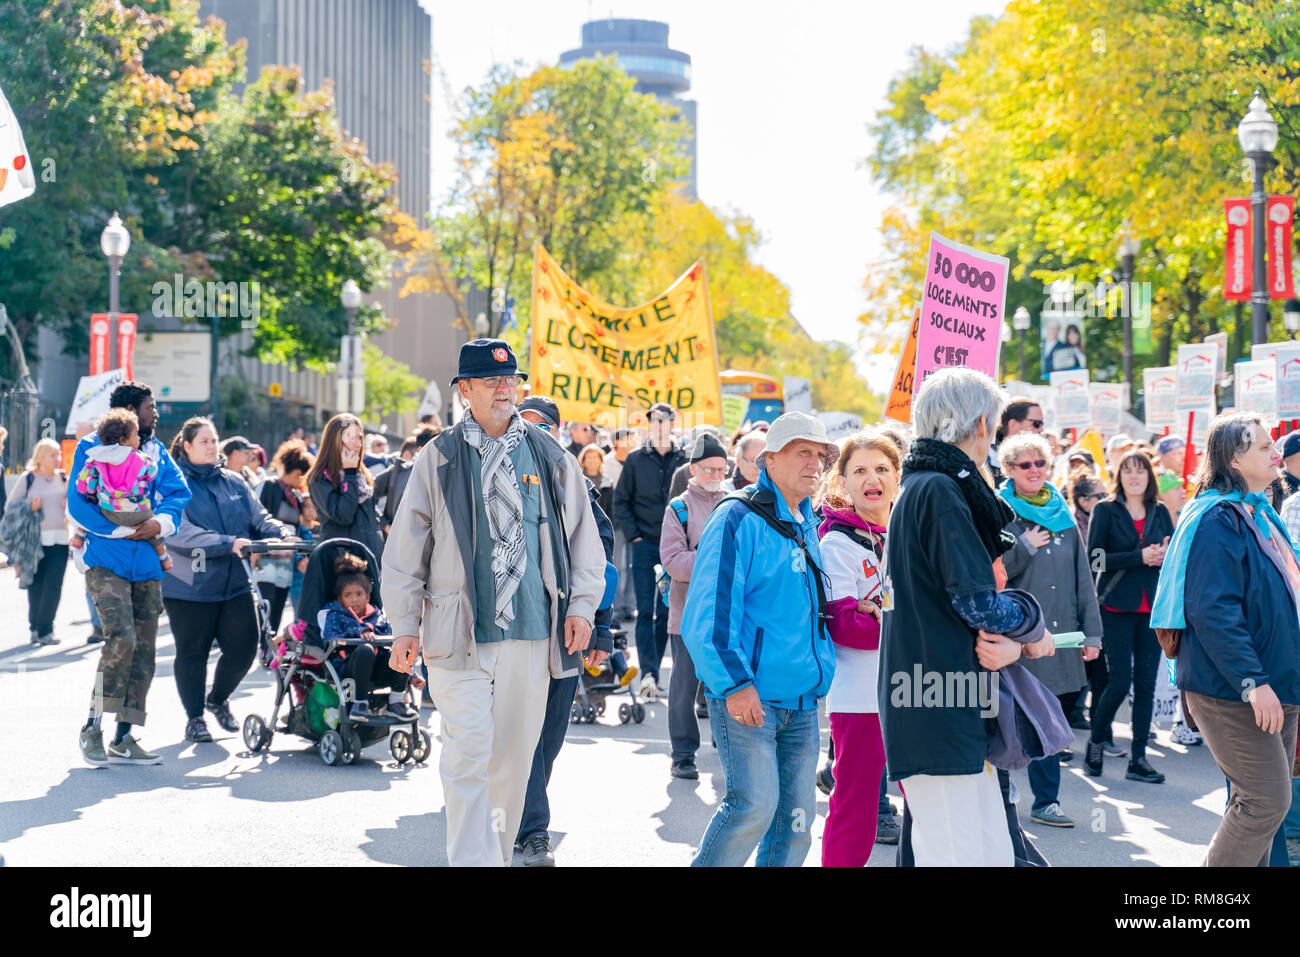 Quebec, OKT 2: Viele Menschen in der Altstadt von Quebec Marching on Oct 2, 2018 in Quebec, Kanada Stockfoto